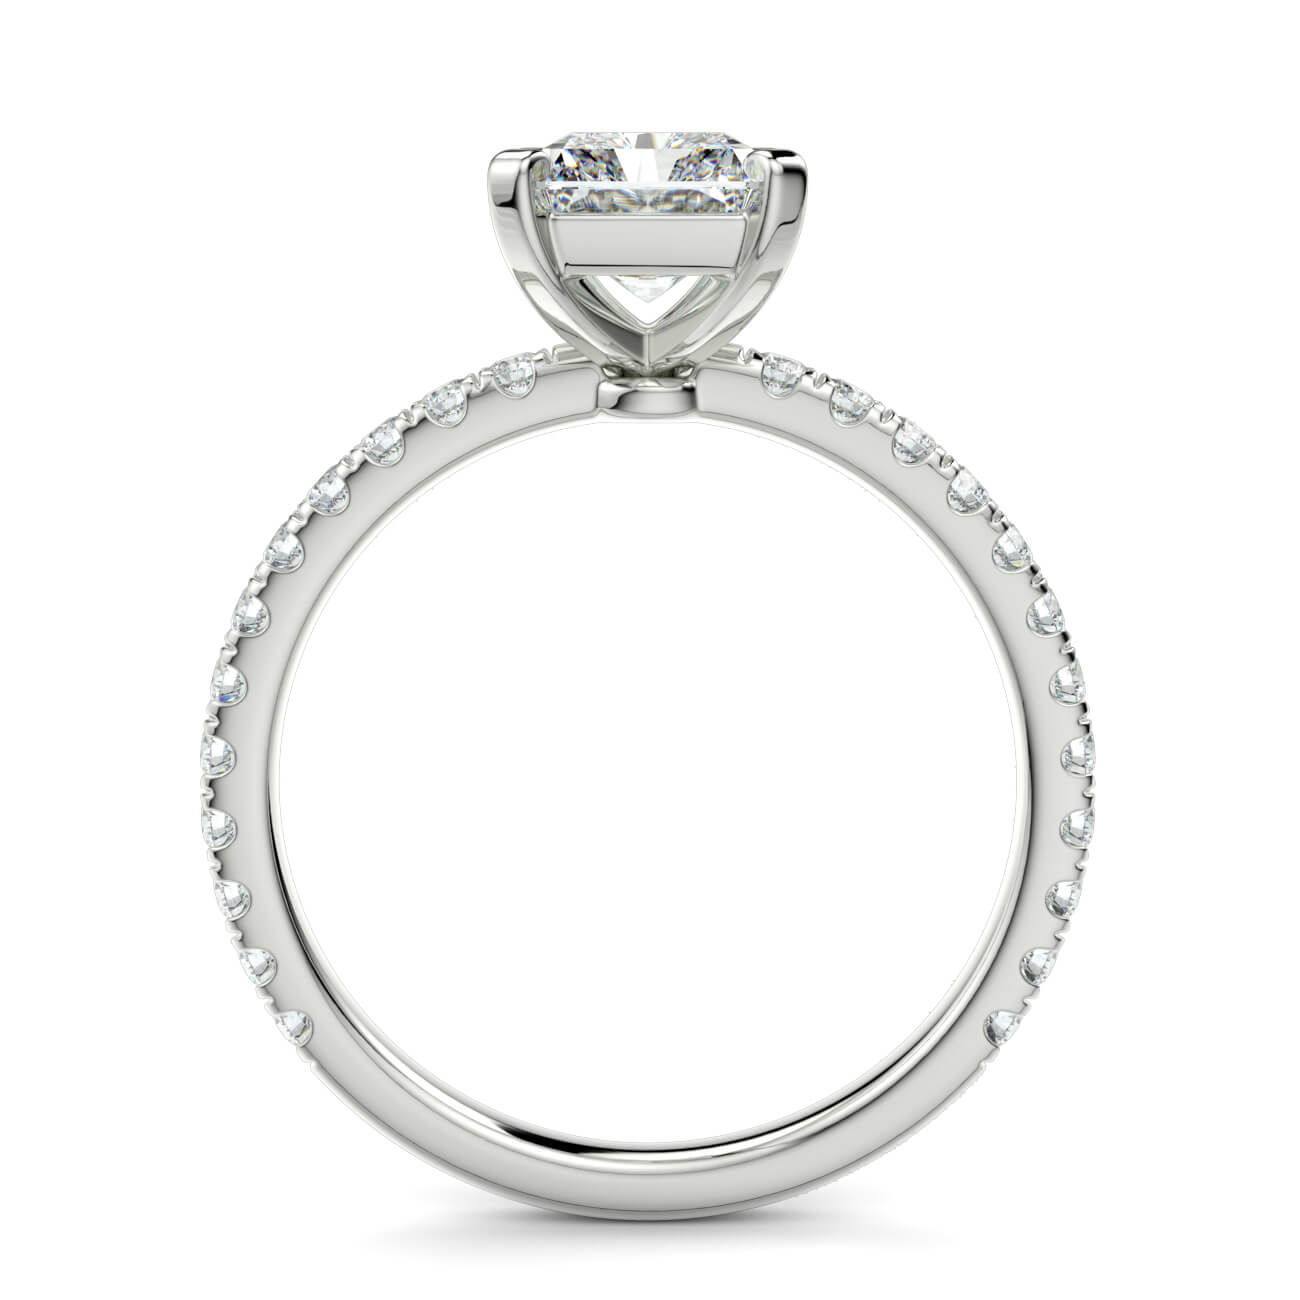 Delicate ‘Liat’ Radiant Cut Diamond Engagement Ring in 18k White Gold – Australian Diamond Network